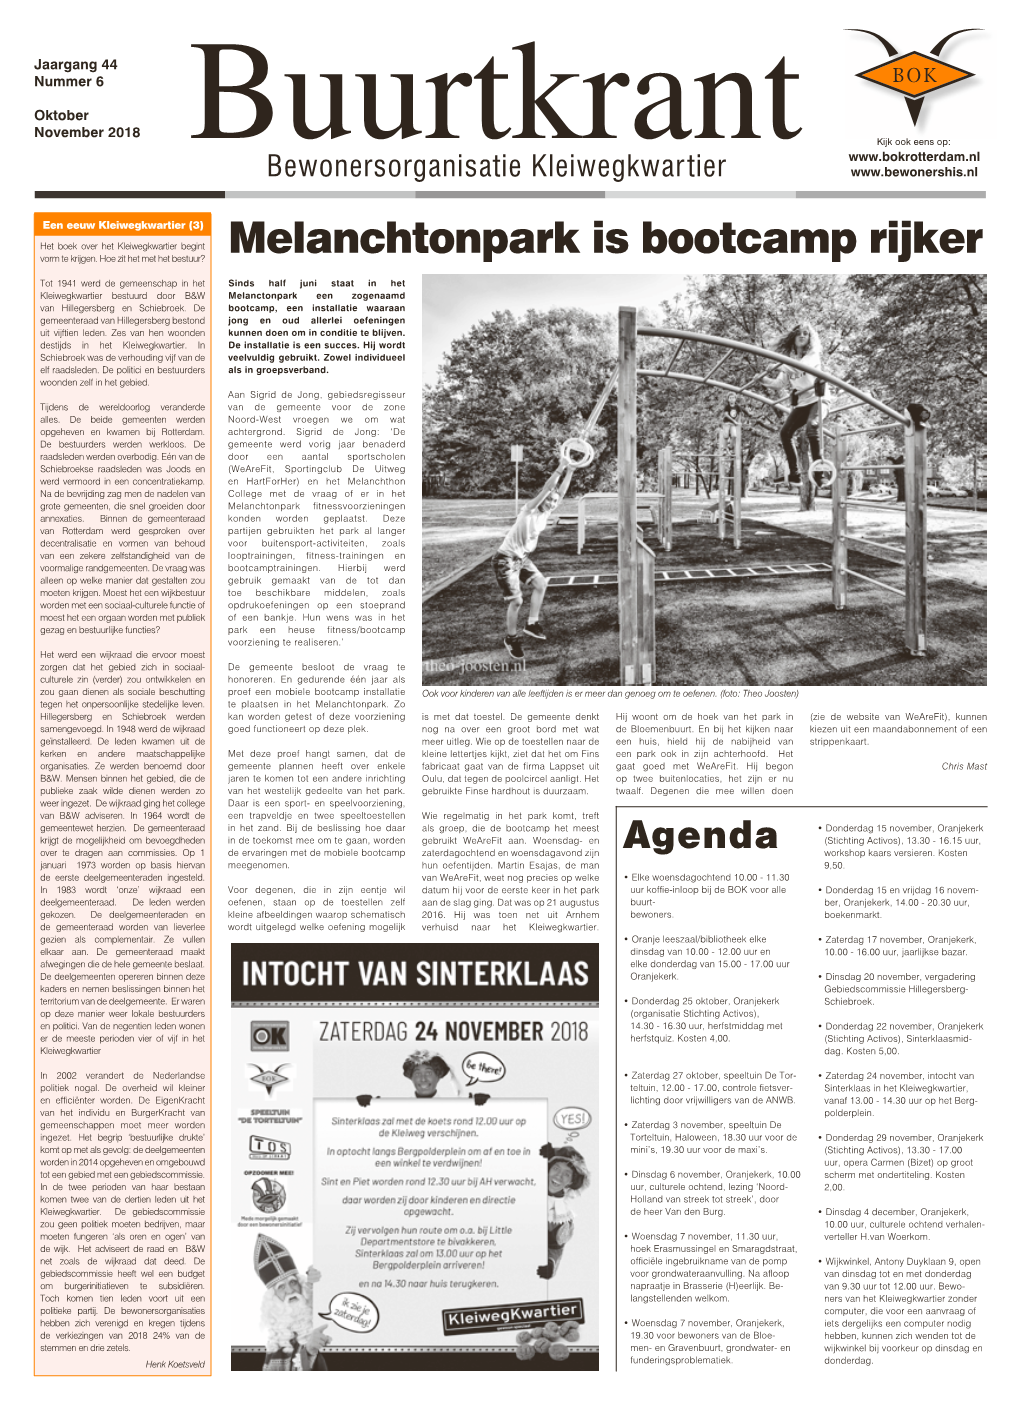 Melanchtonpark Is Bootcamp Rijker Vorm Te Krijgen